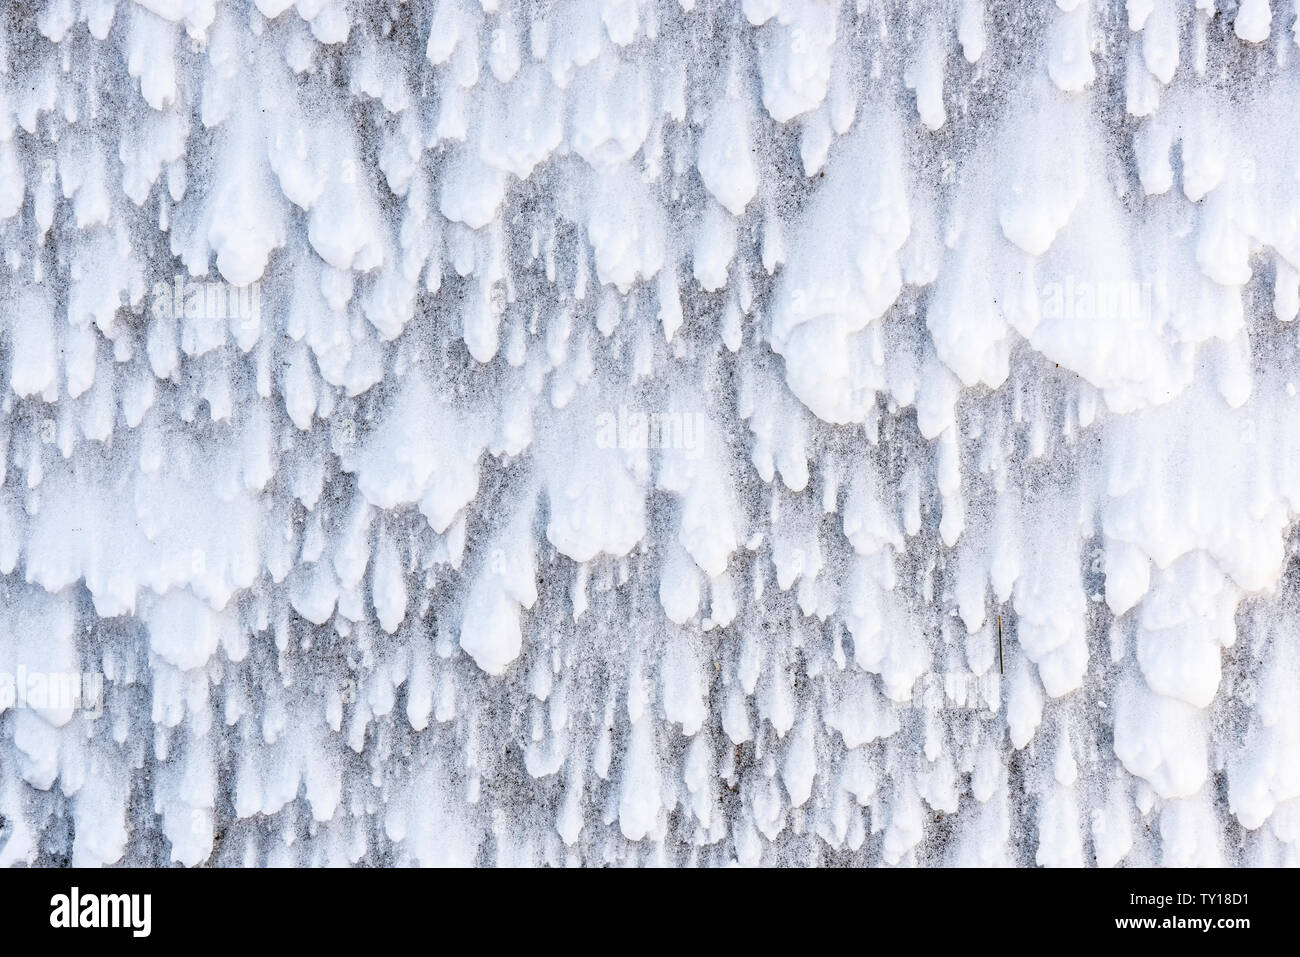 Wind Schnee Muster, Ende Winter Schnee Sturm, östlichen Nordamerika, von Dominique Braud/Dembinsky Foto Assoc Stockfoto